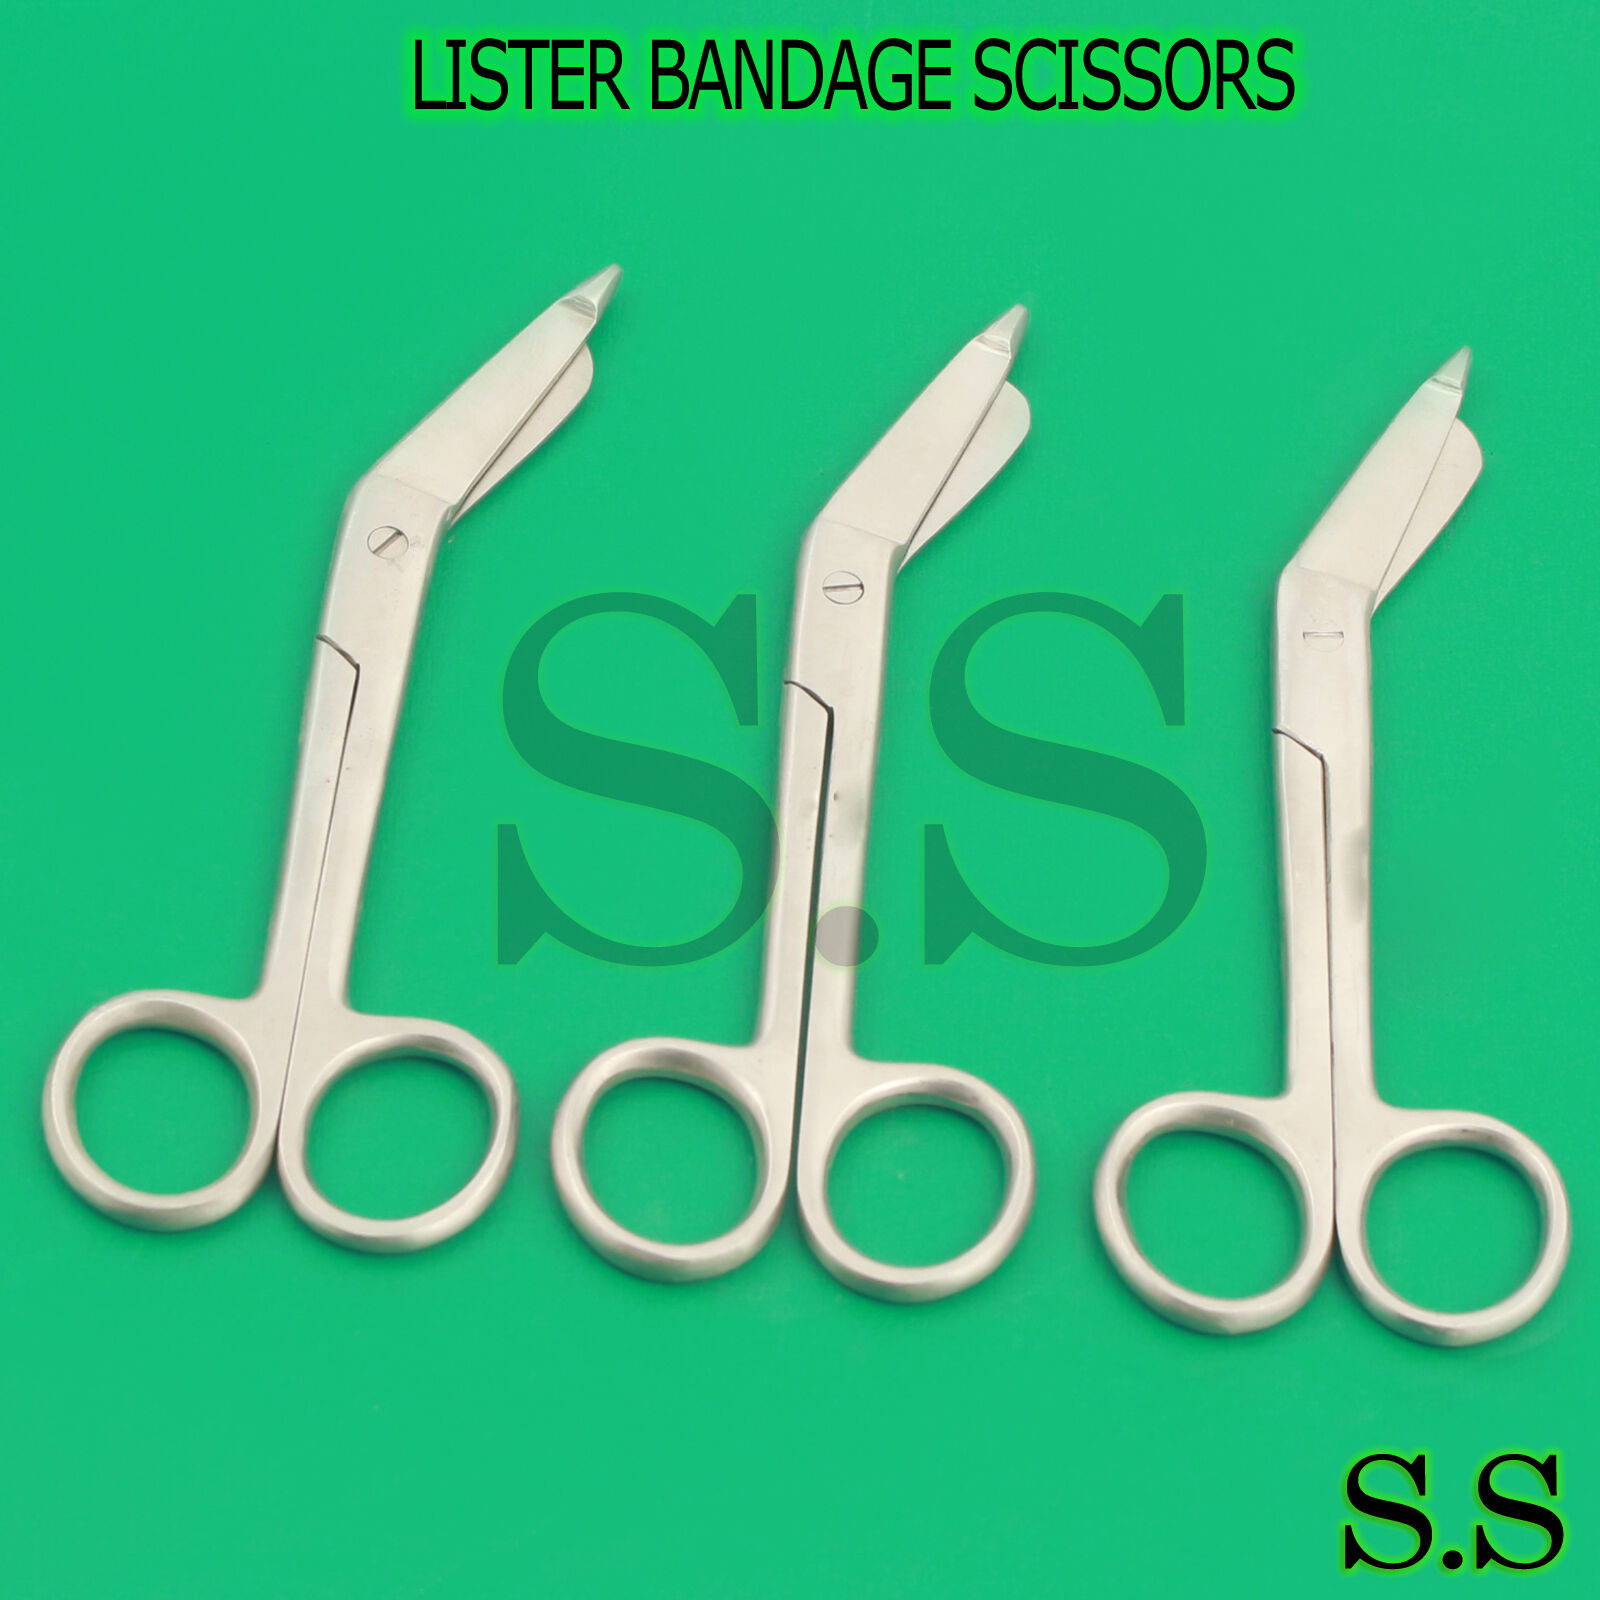 3 Lister Bandage Scissors 5.5" Surgical Medical Instruments